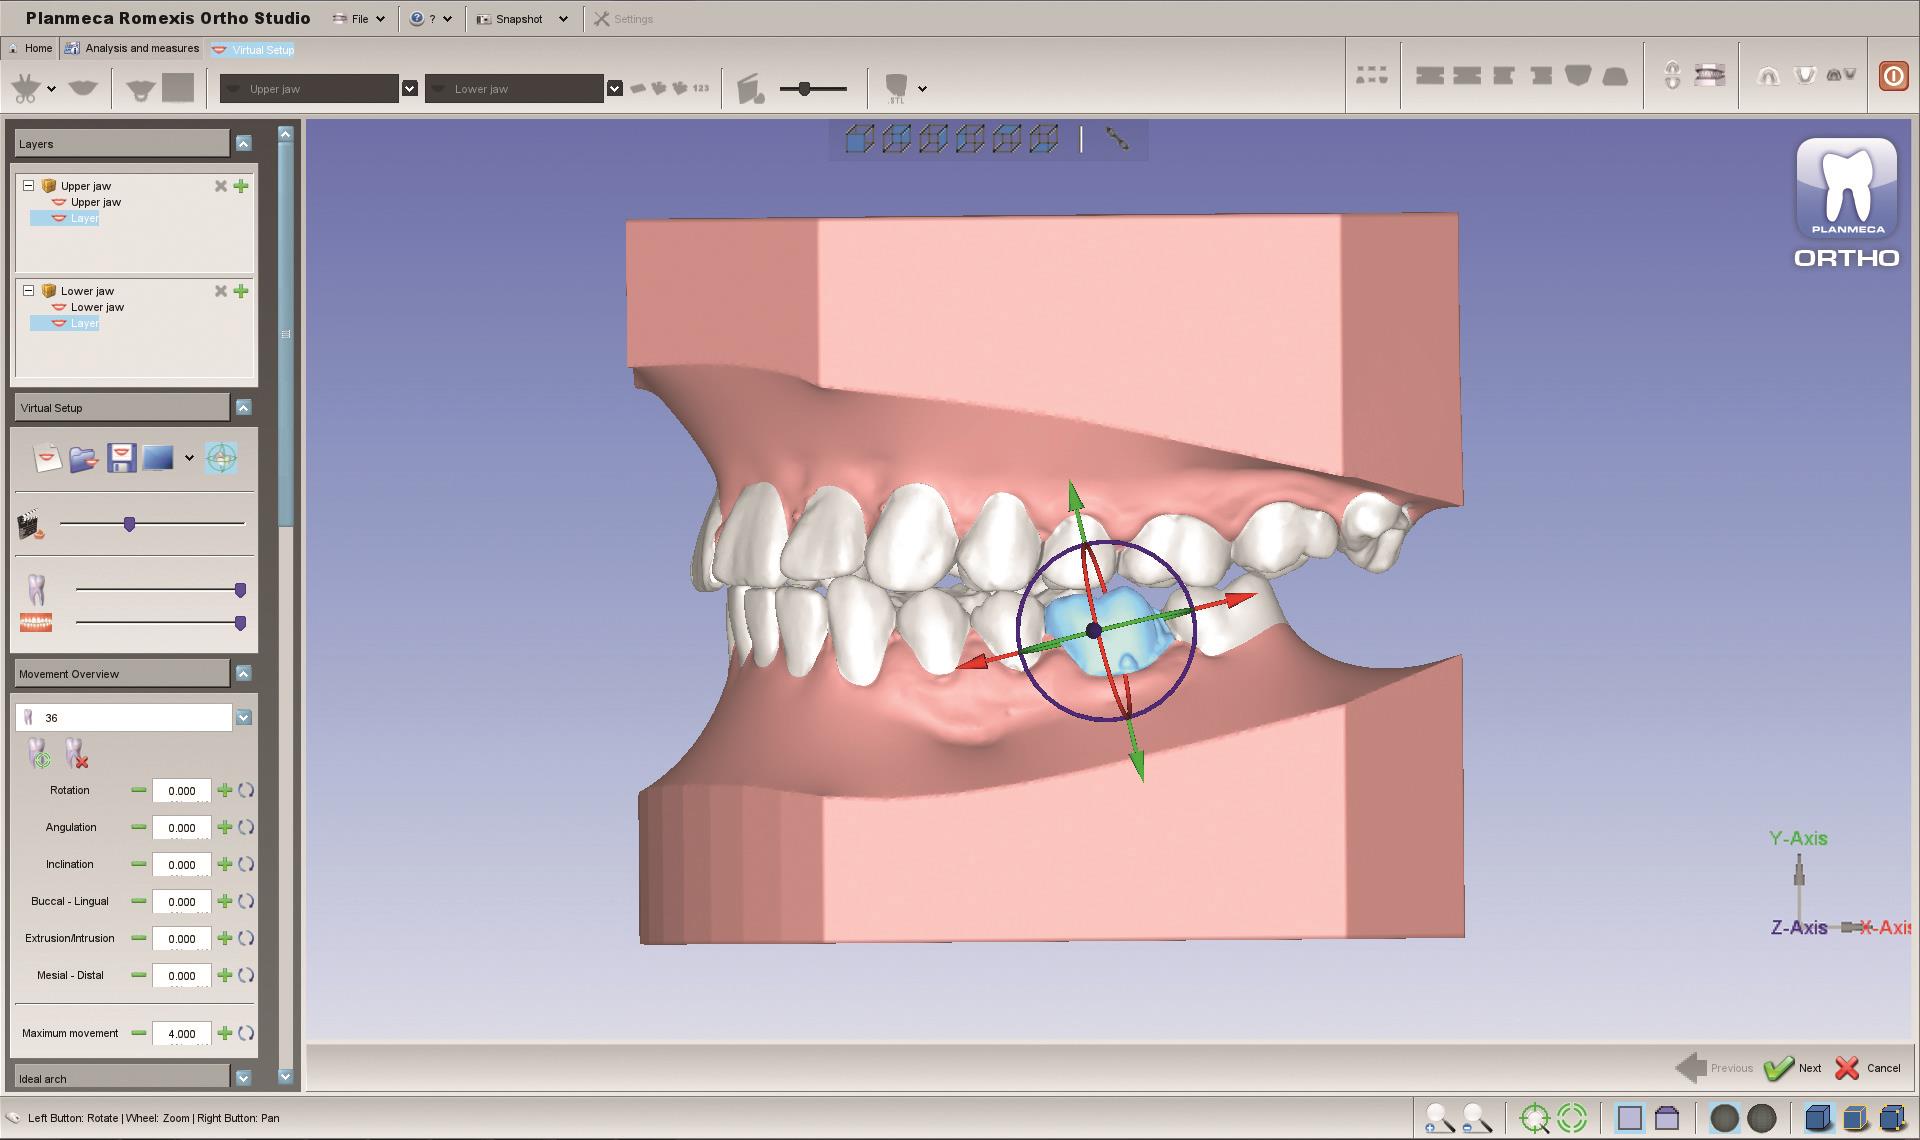 Planmeca esittelee uusia 3D-työkaluja oikomishoidon hammaslääkäreille ja hammaslaboratorioille